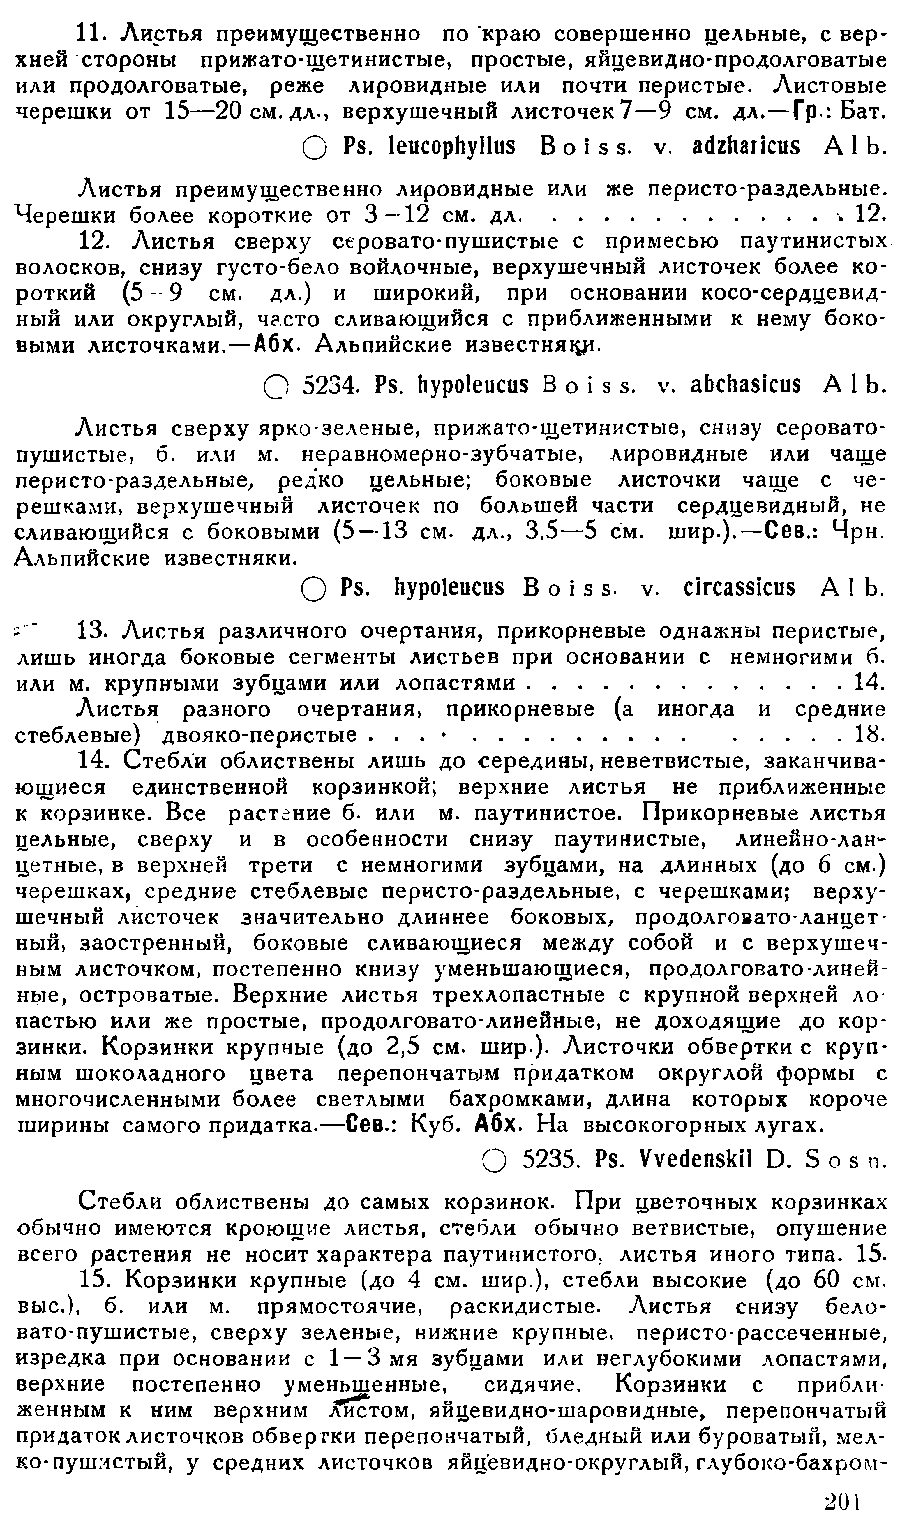 https://forum.plantarium.ru/misc.php?action=pun_attachment&amp;item=31375